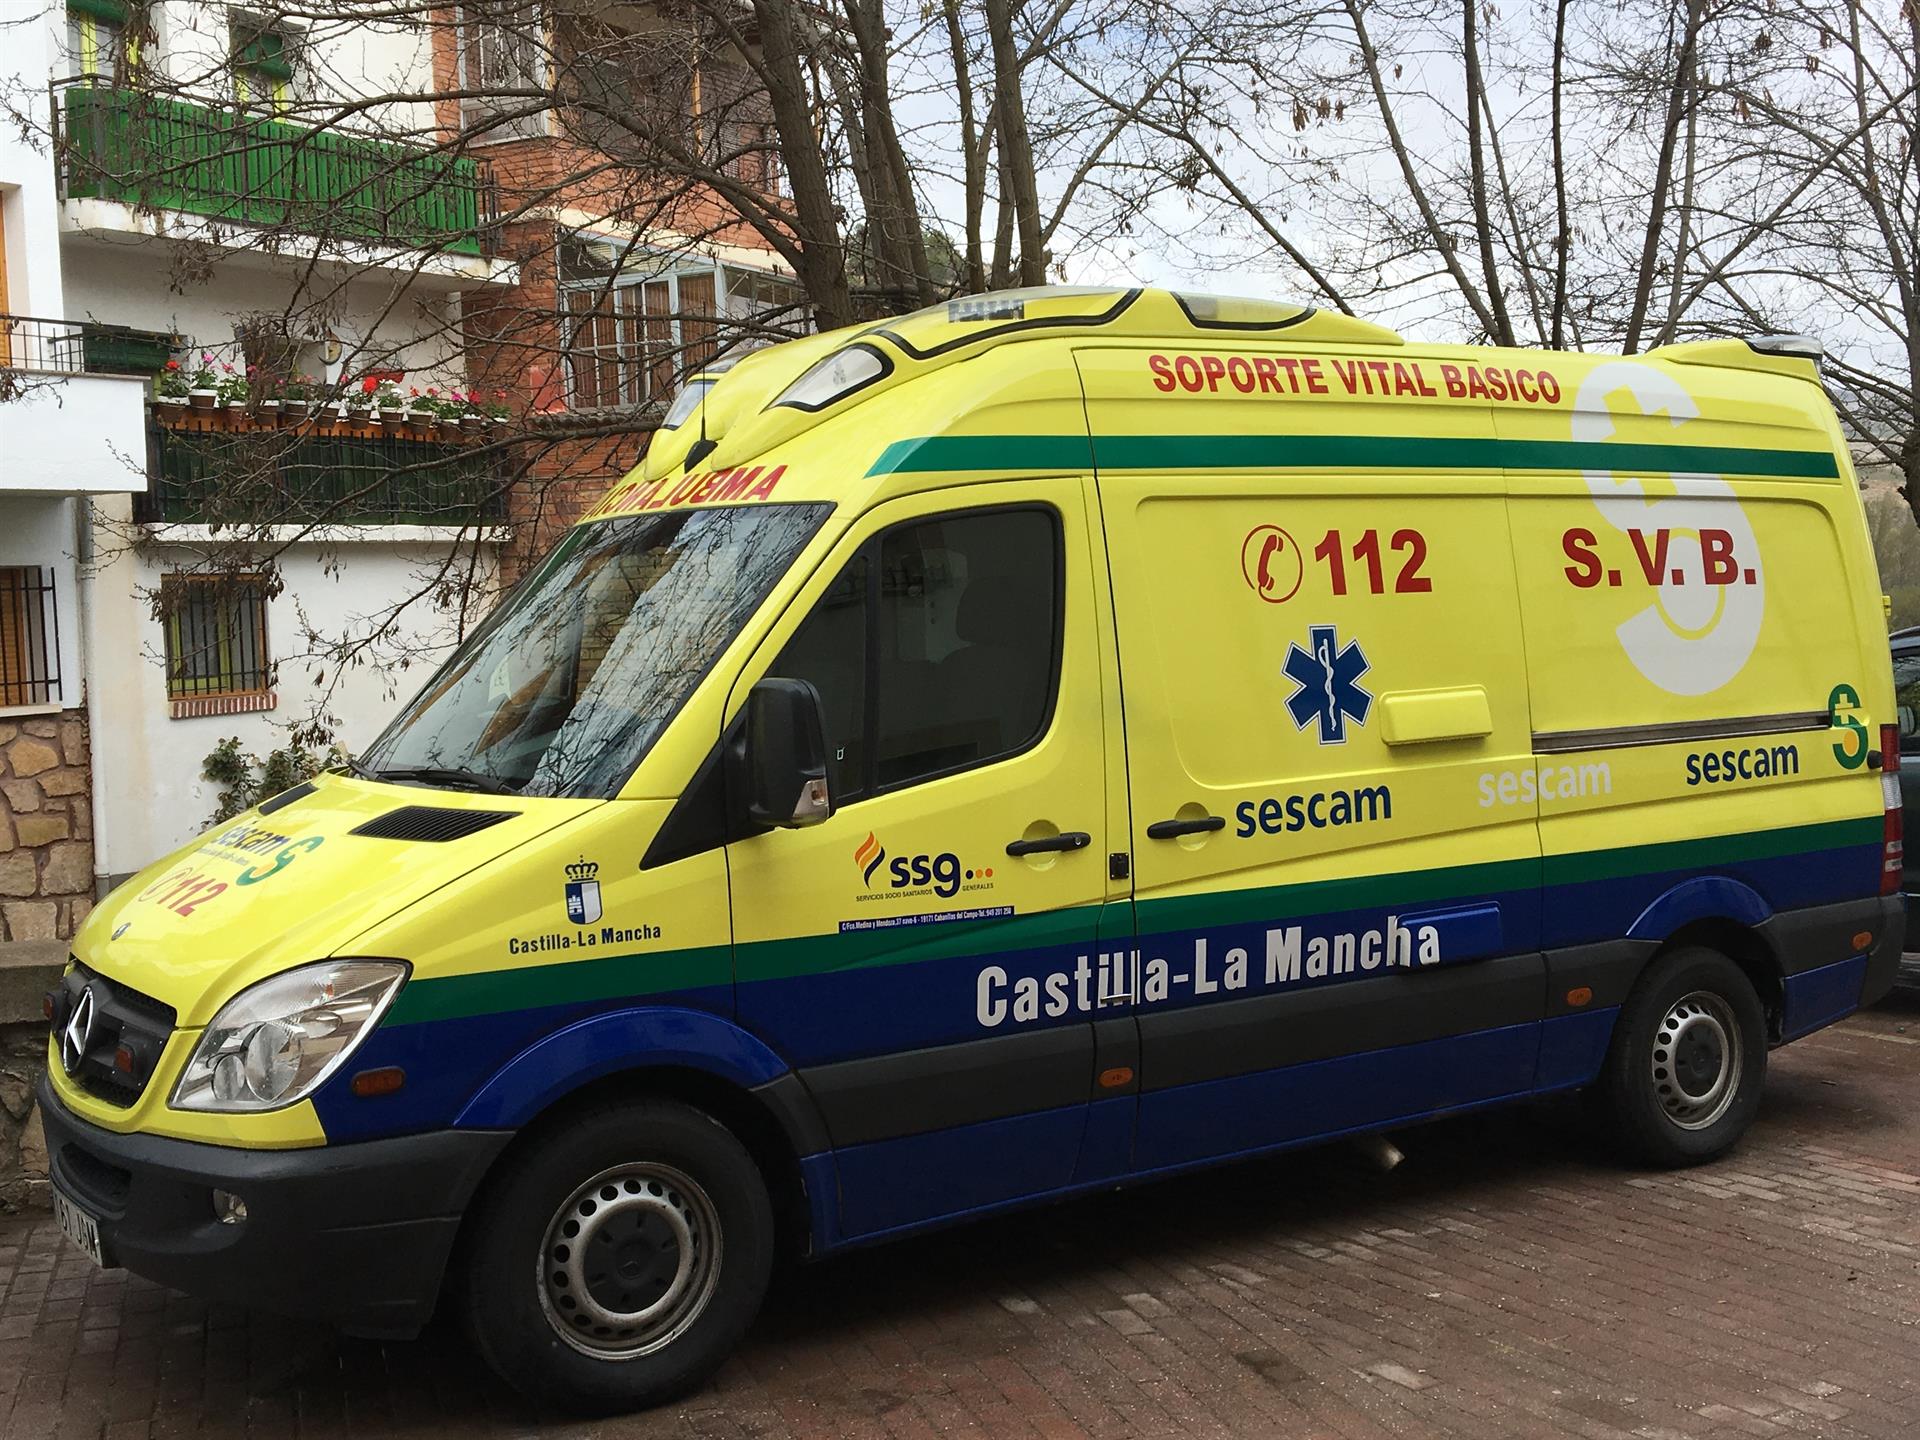 Fondos de pantalla de ambulancias - FondosMil